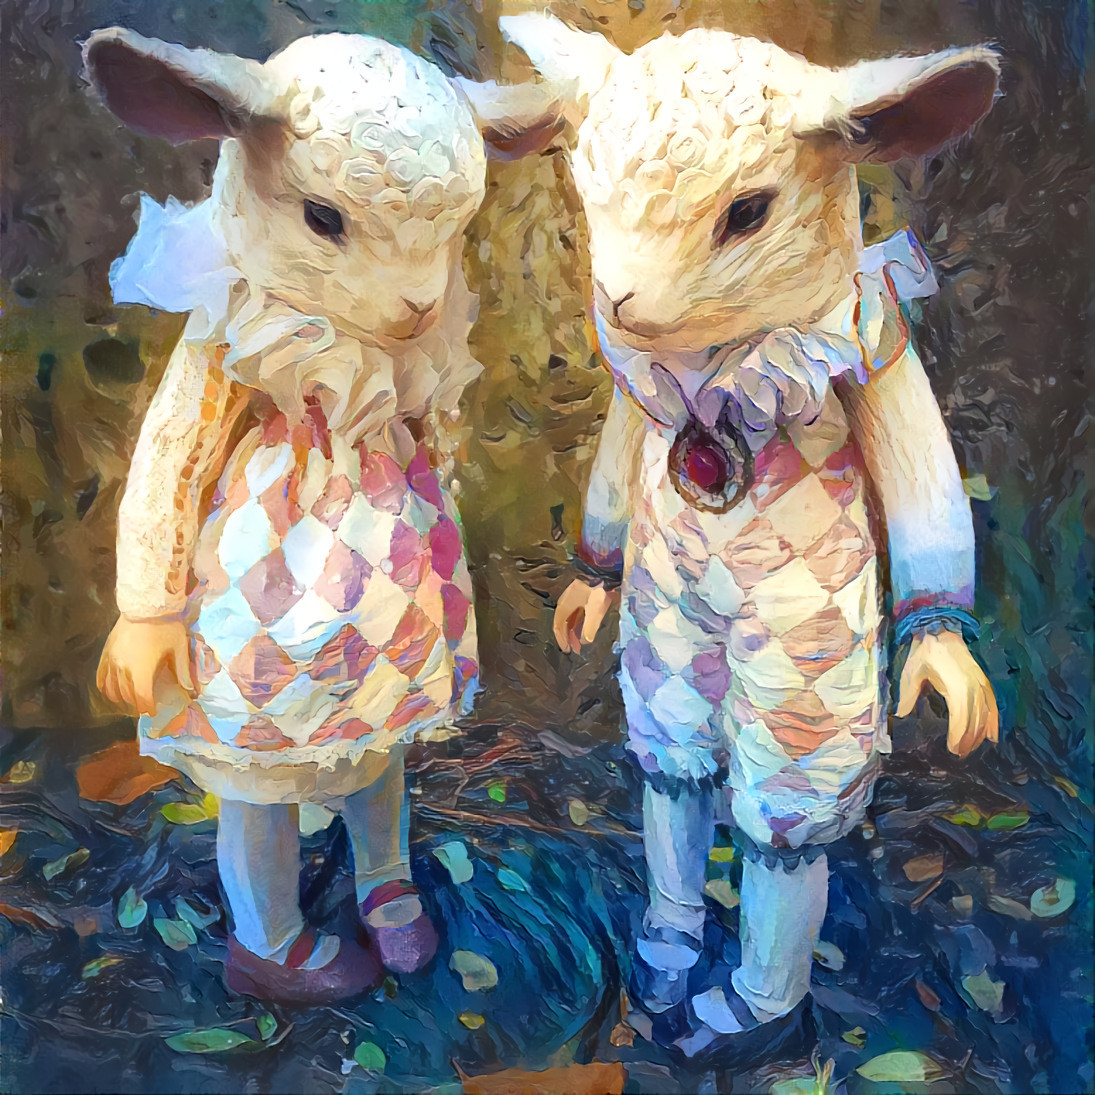 The Lamb Head kids